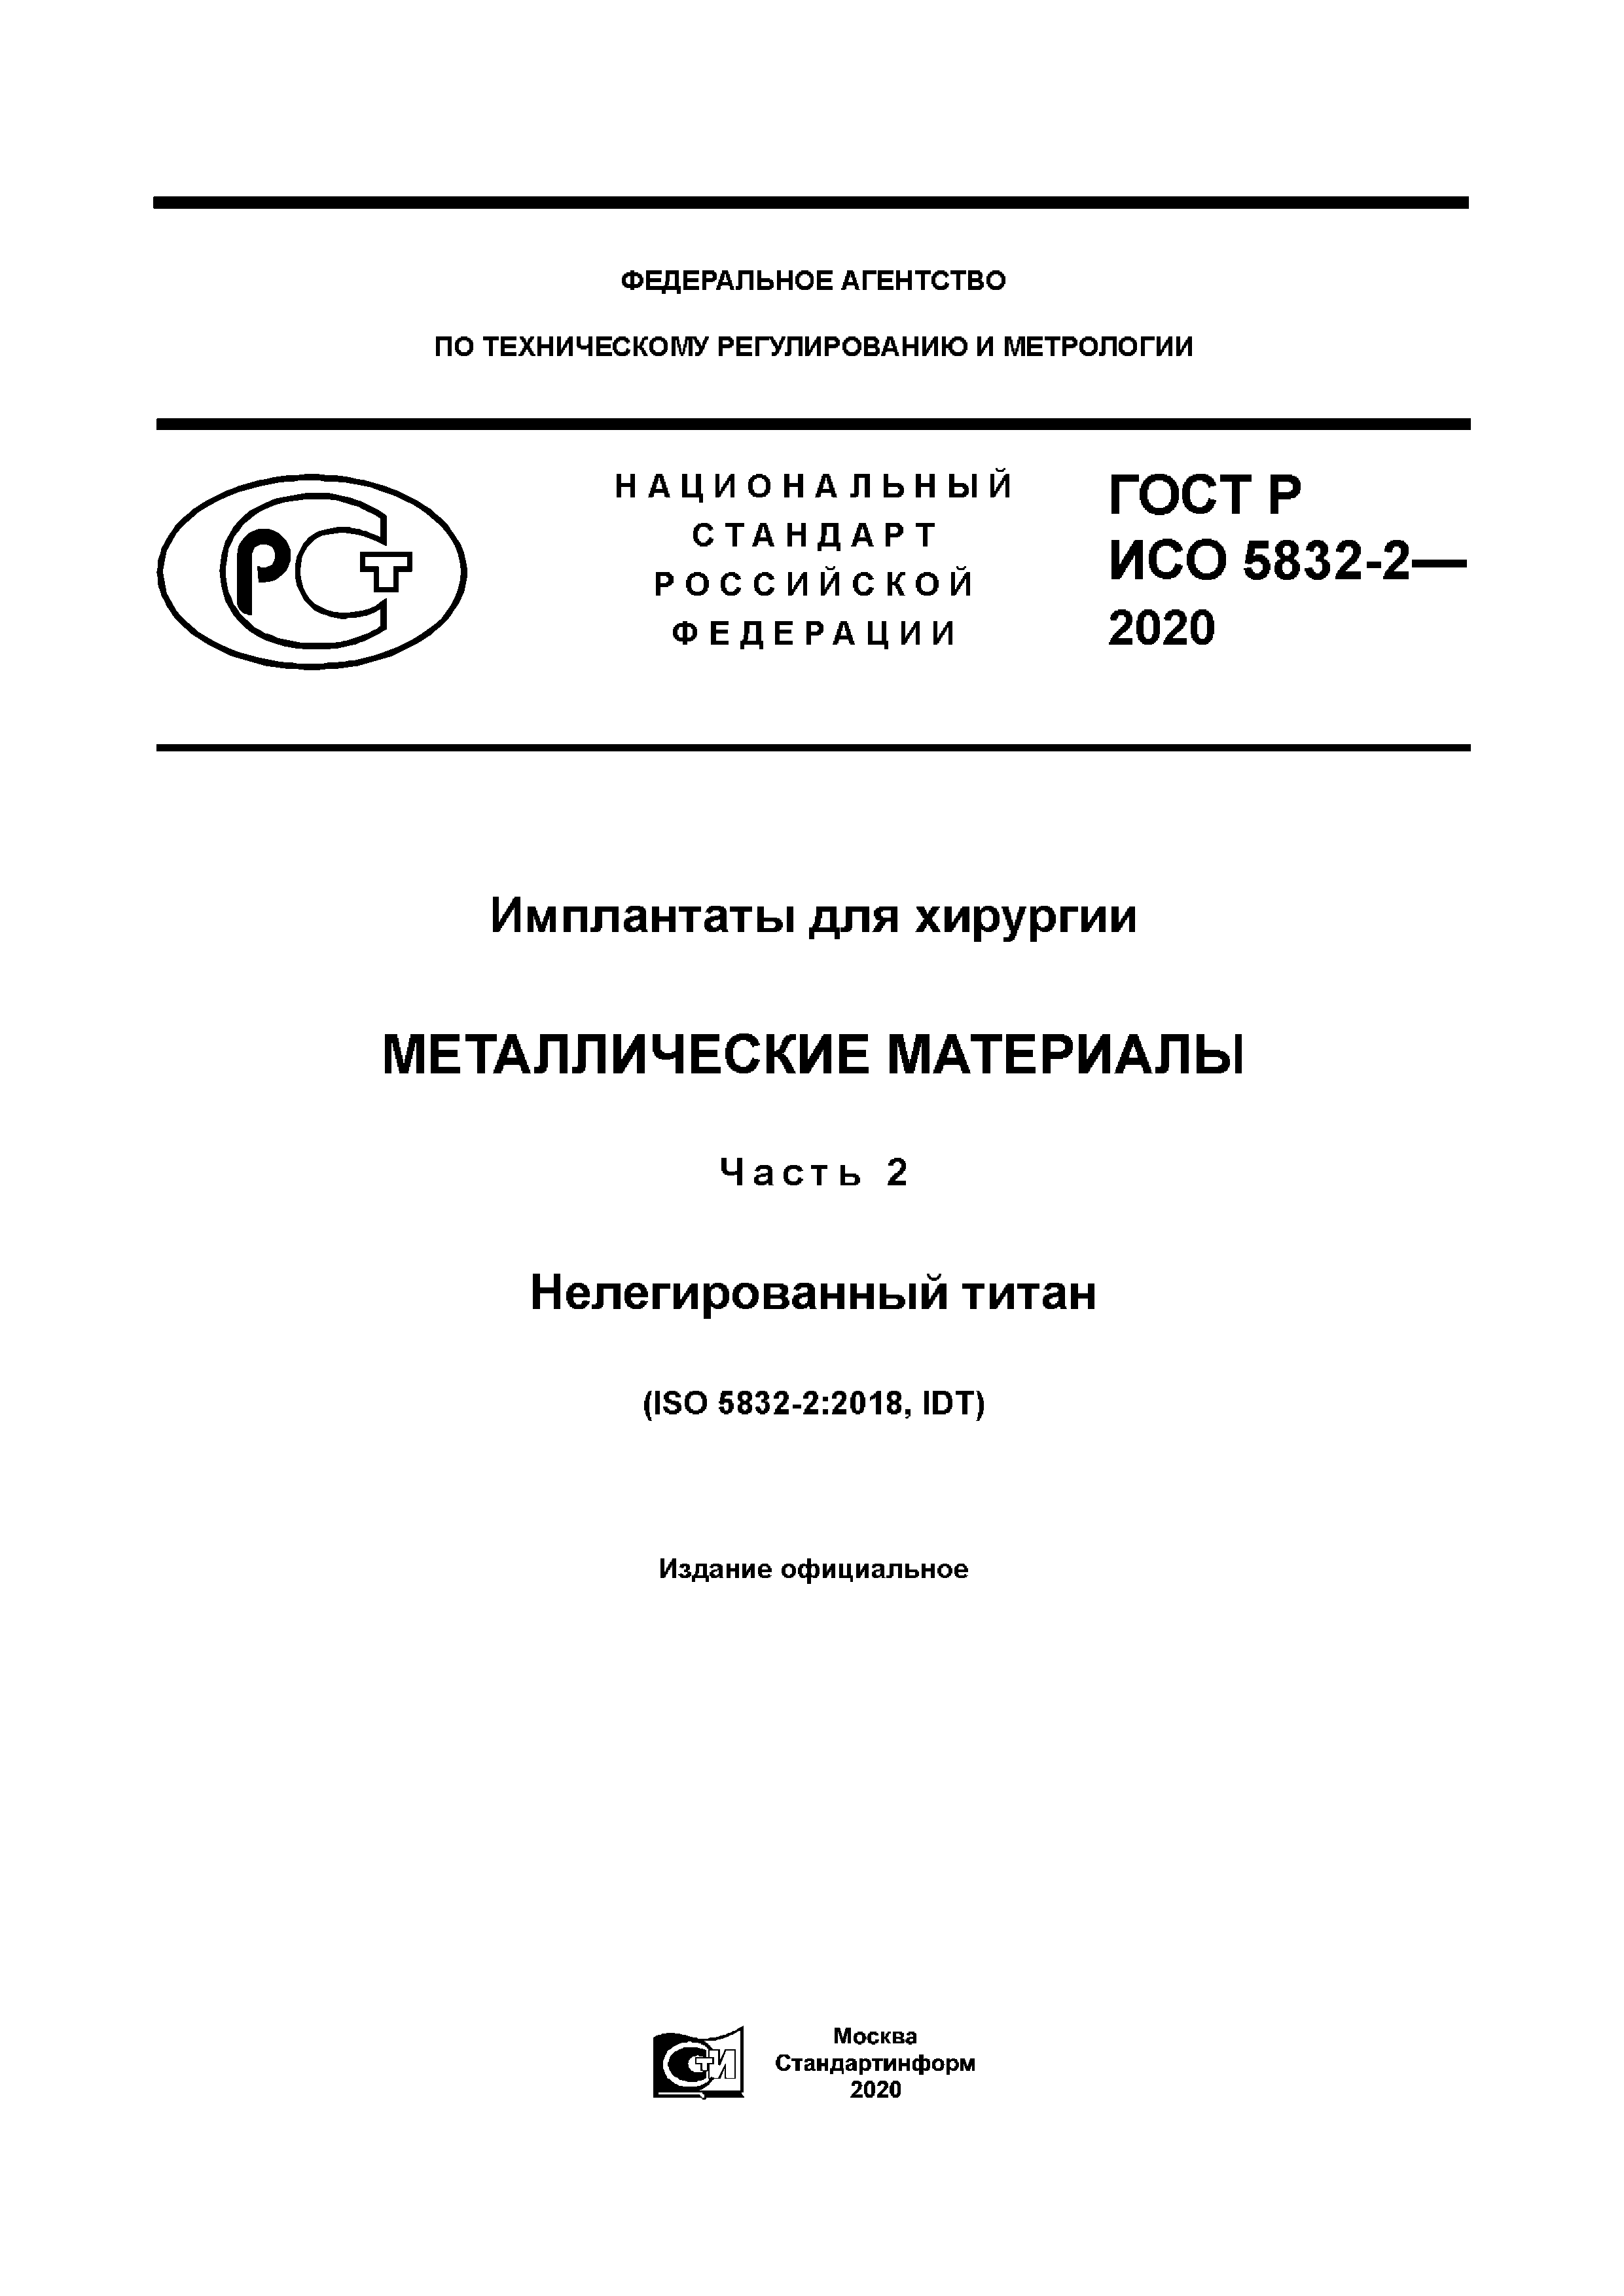 ГОСТ Р ИСО 5832-2-2020